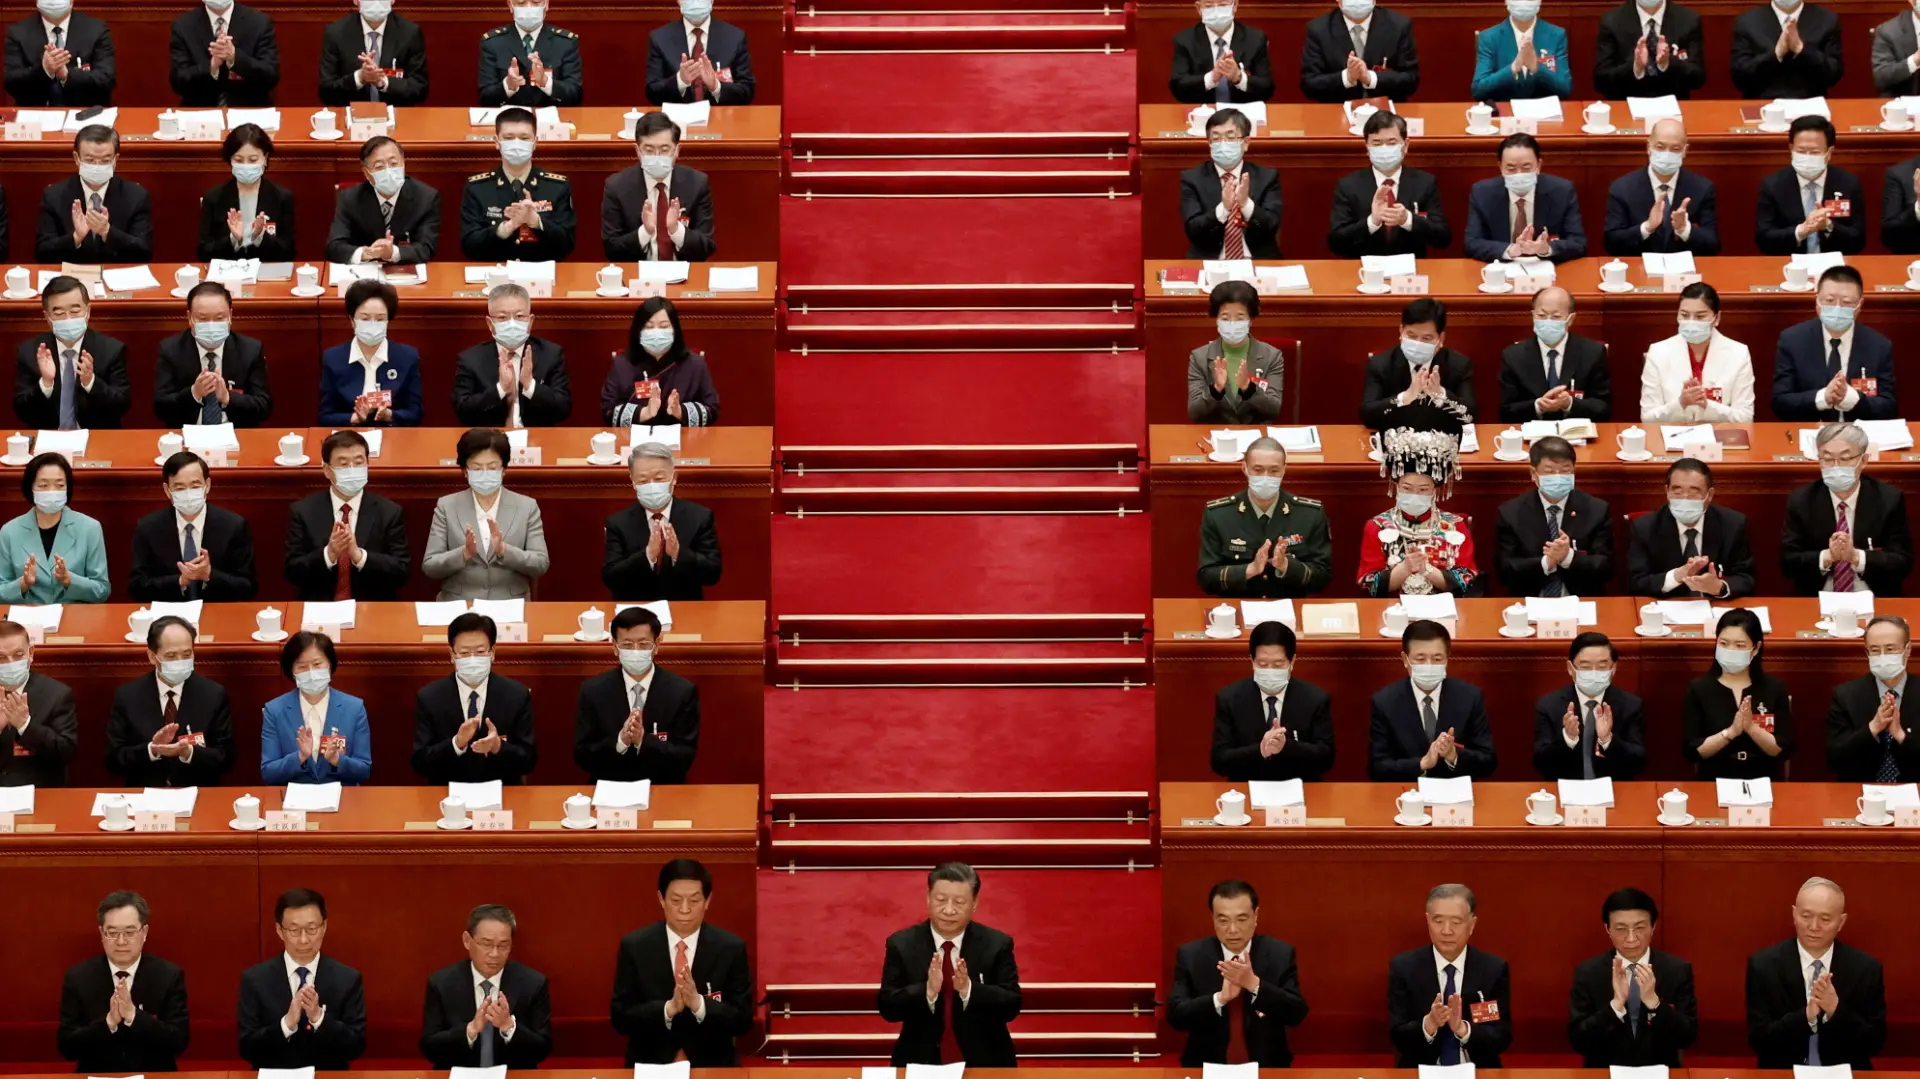 kineski parlament reuters-64044500f2f00.webp